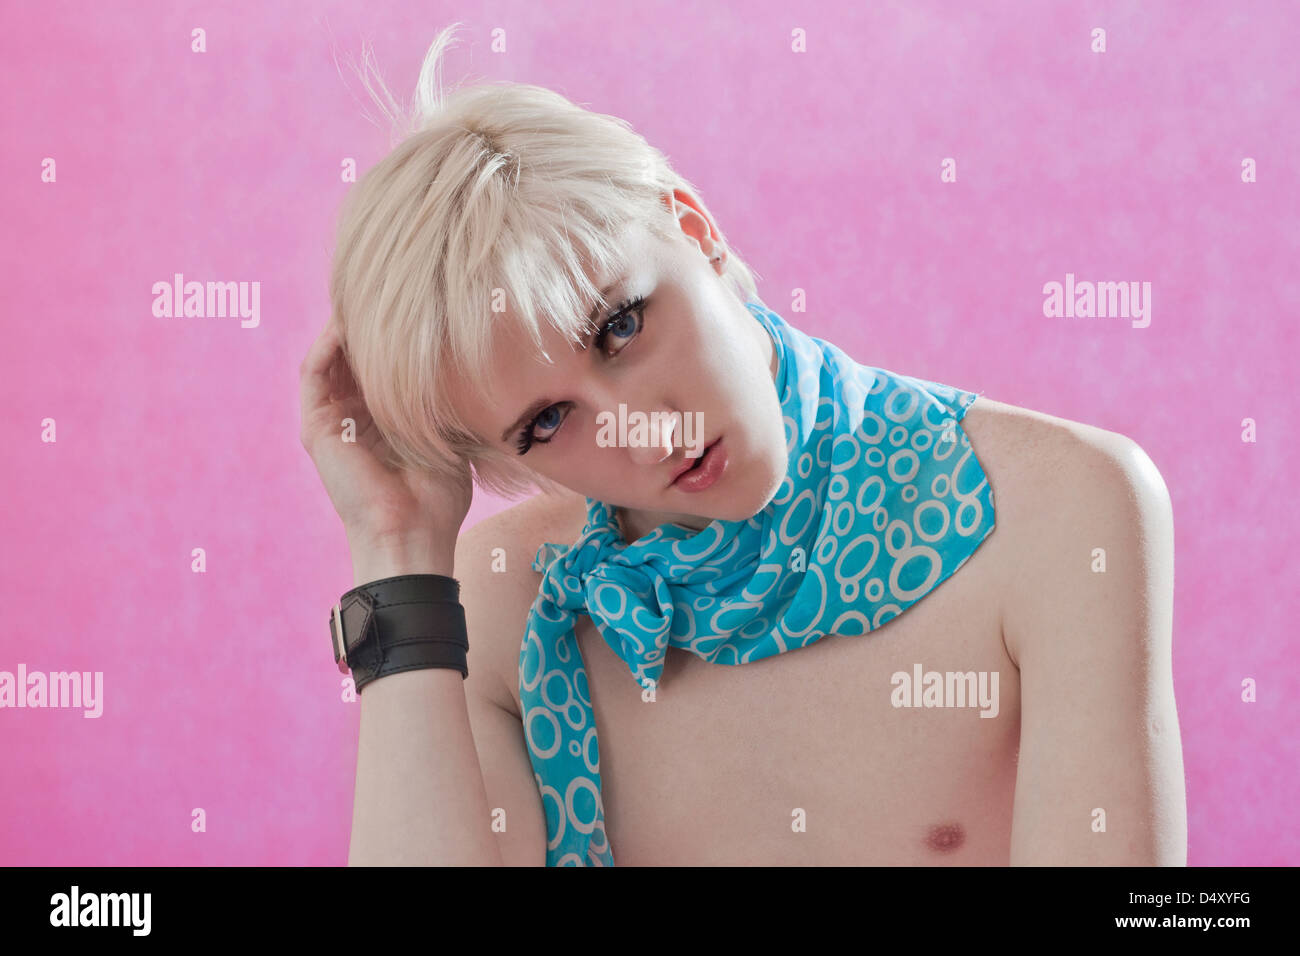 der hübsche junge Mann Homosexuell mit falschen Wimpern und Kosmetik auf einer Fläche auf einem rosa Hintergrund vermisst Stockfoto